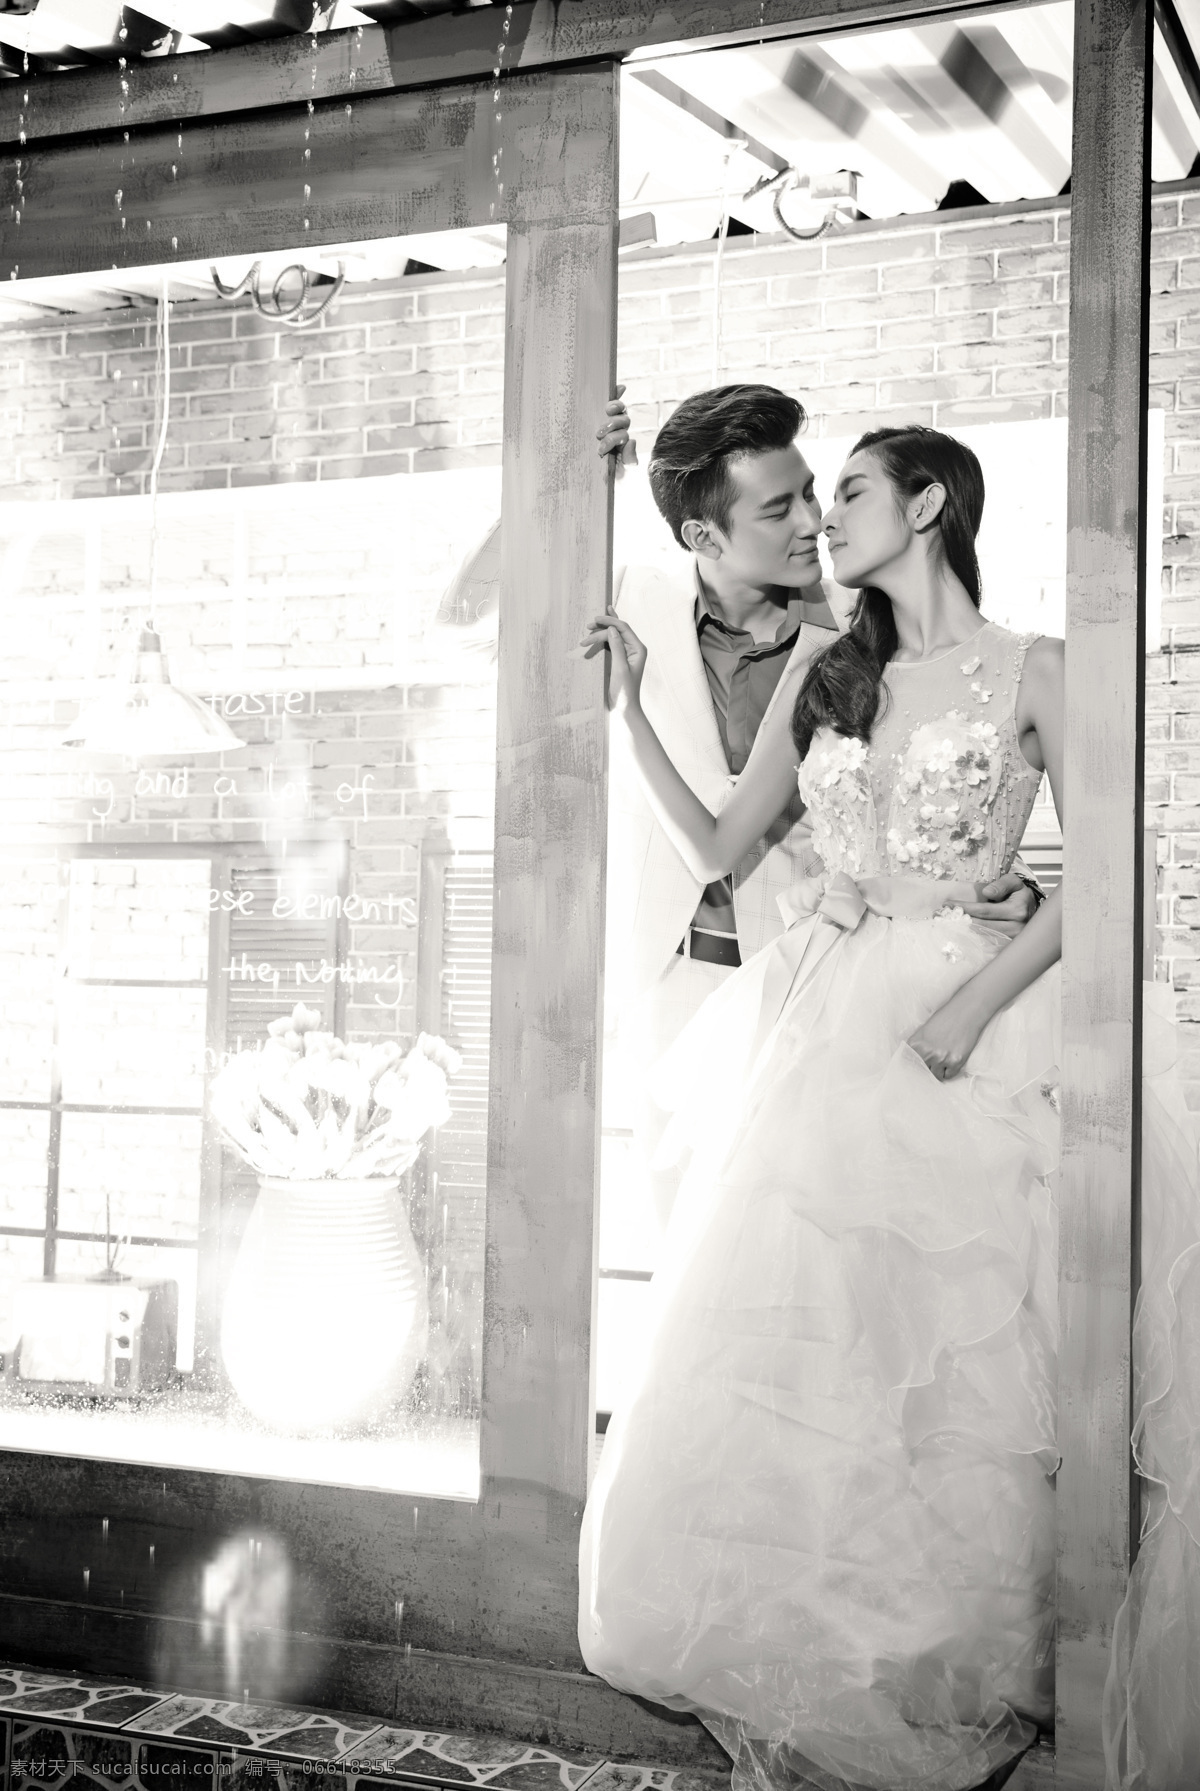 门口 接吻 情侣 婚纱摄影 新人情侣 新郎新娘 结婚照 婚纱情侣 黑白照 情侣图片 人物图片